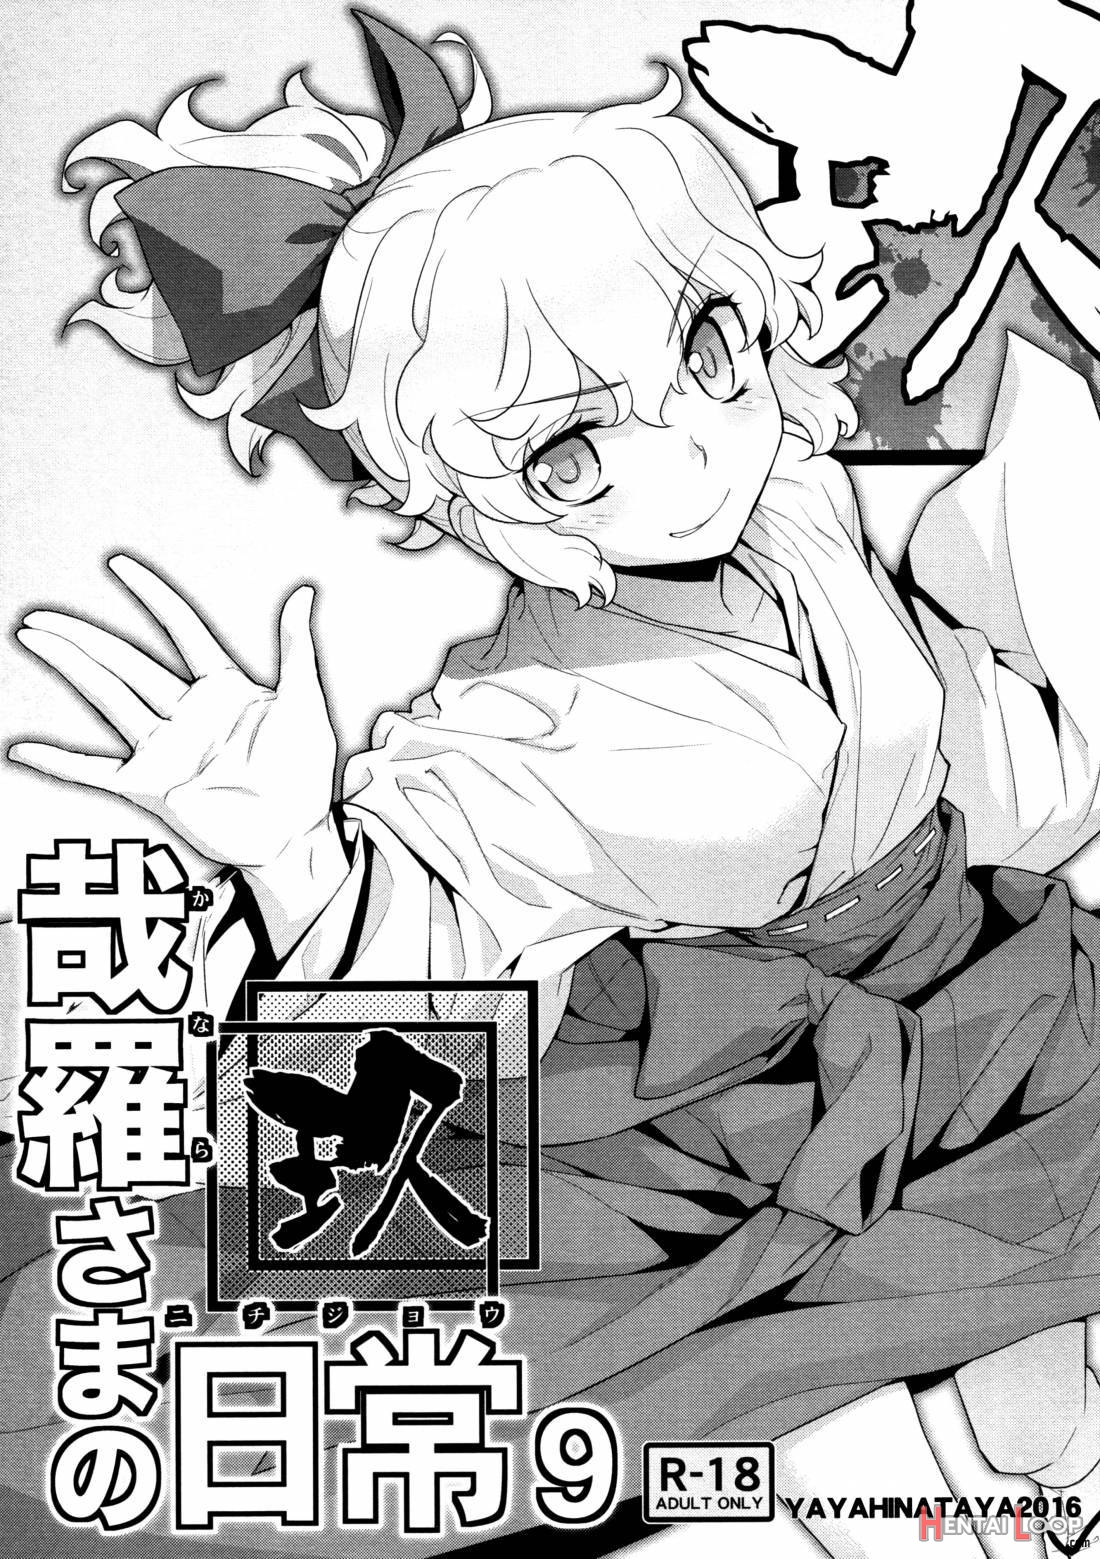 Kanara-sama No Nichijou Kyuu page 1